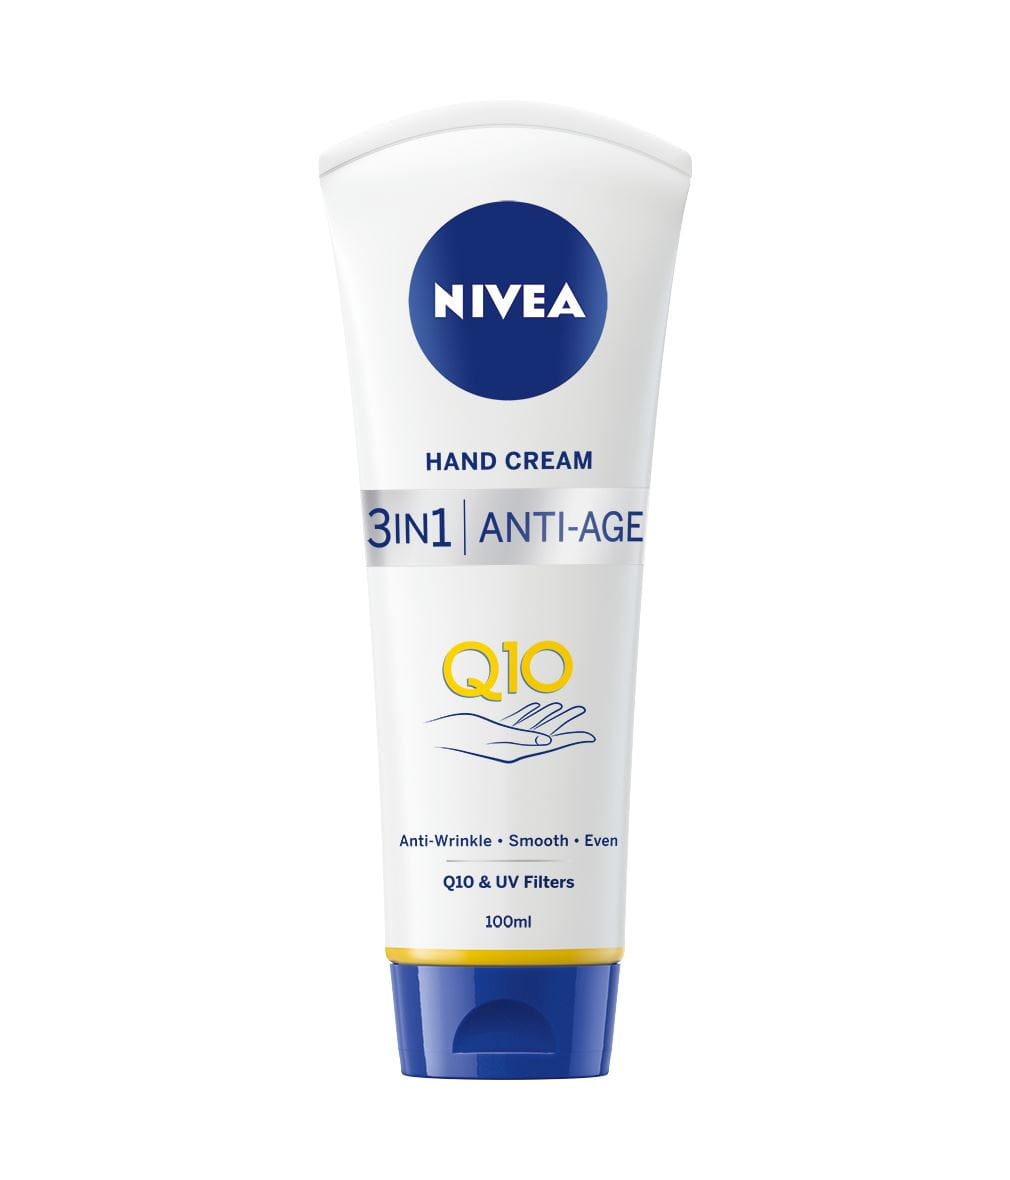 NIVEA 3IN1 Q10 ANTI-AGE CARE HAND CREAM